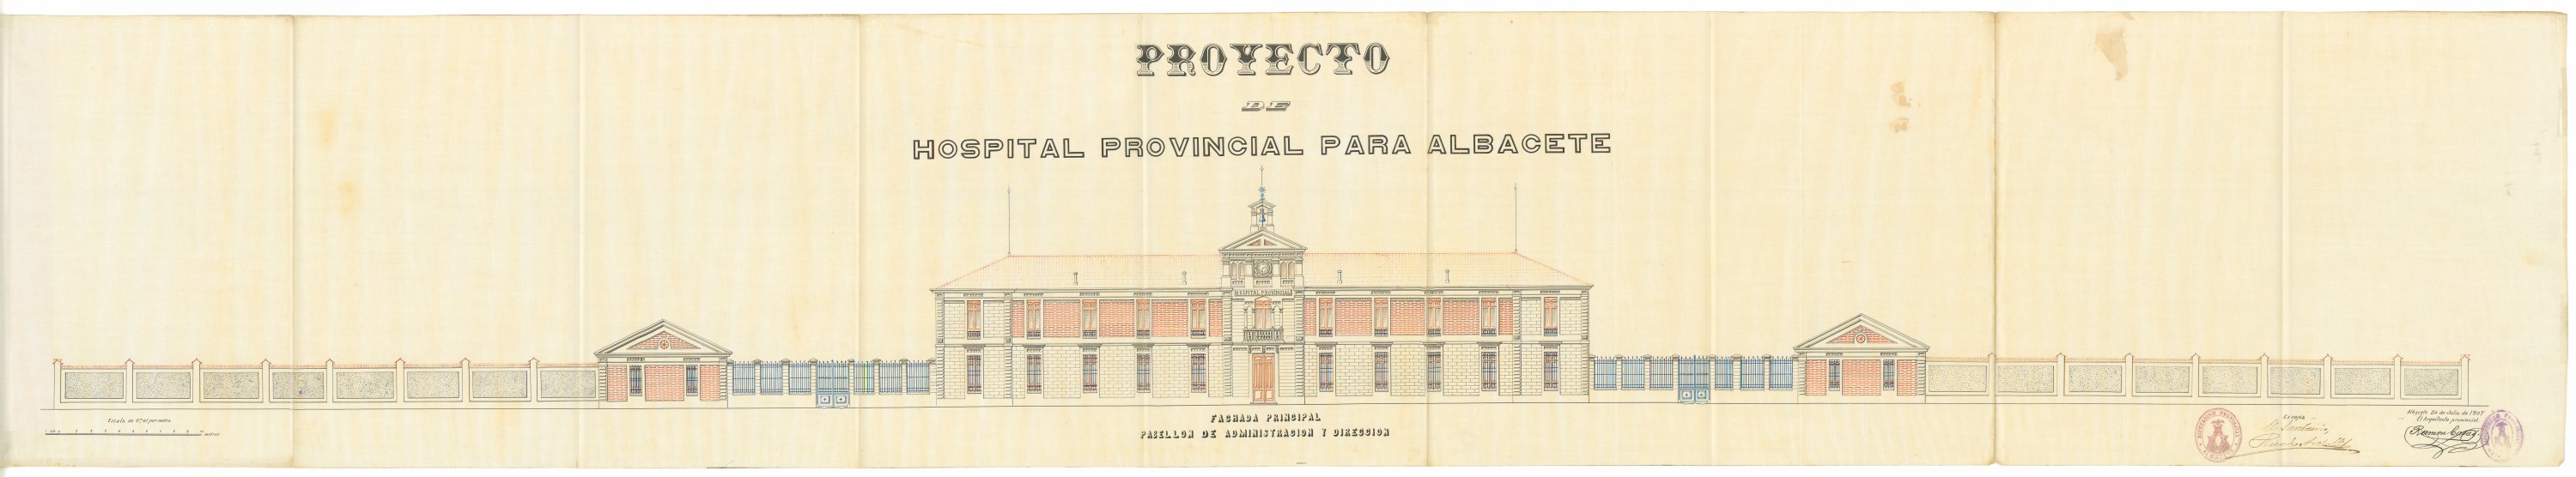 Proyecto de Hospital Provincial para Albacete. 1907. Fachada principal del pabellón de administración y servicios